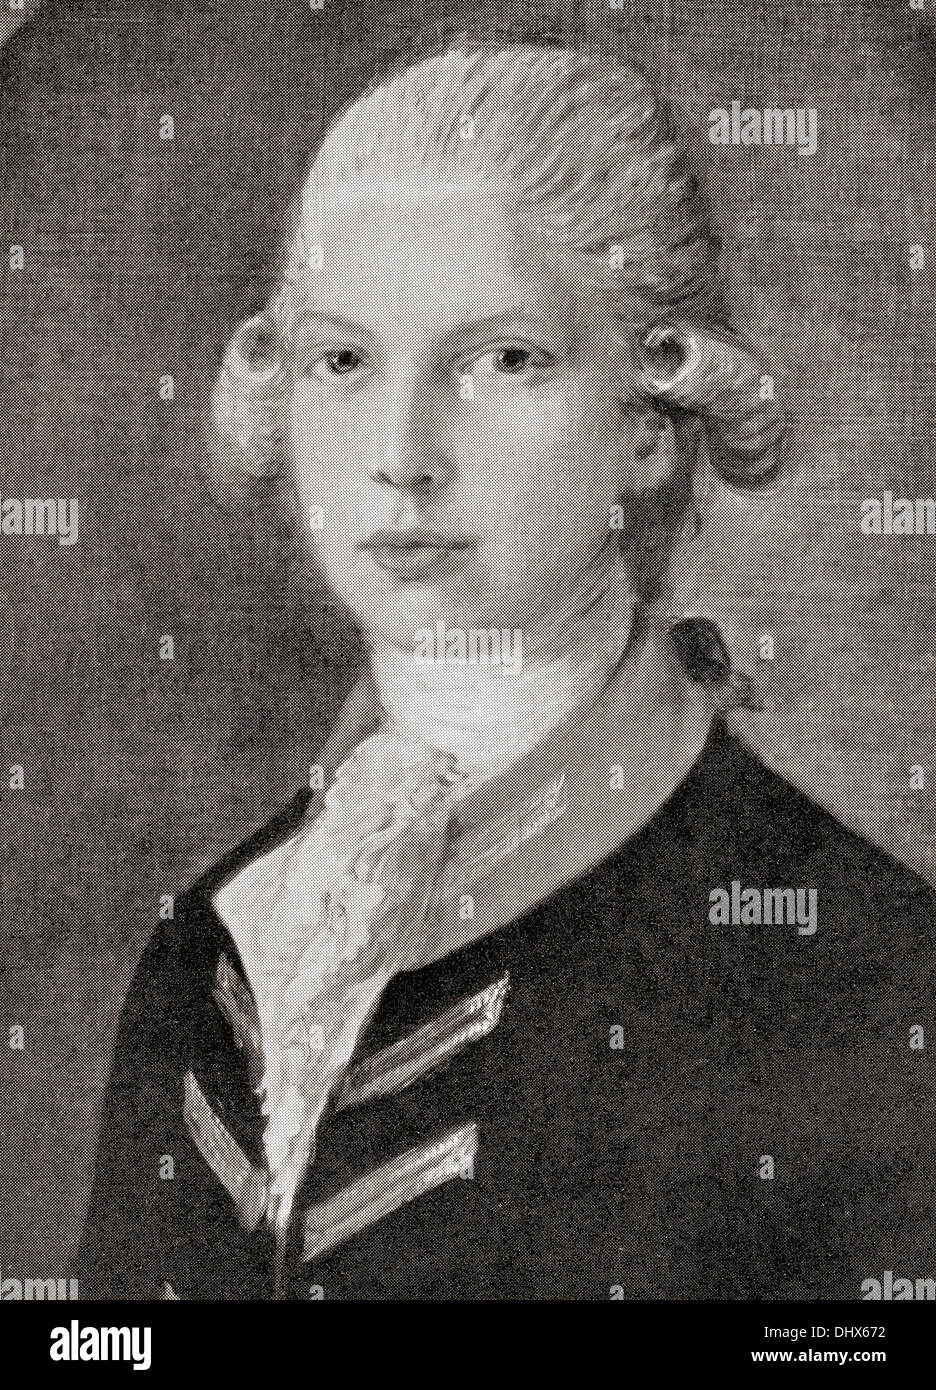 Le Prince Edward, duc de Kent et Strathearn, 1767 - 1820, père de la reine Victoria. Vue ici comme un enfant. Banque D'Images